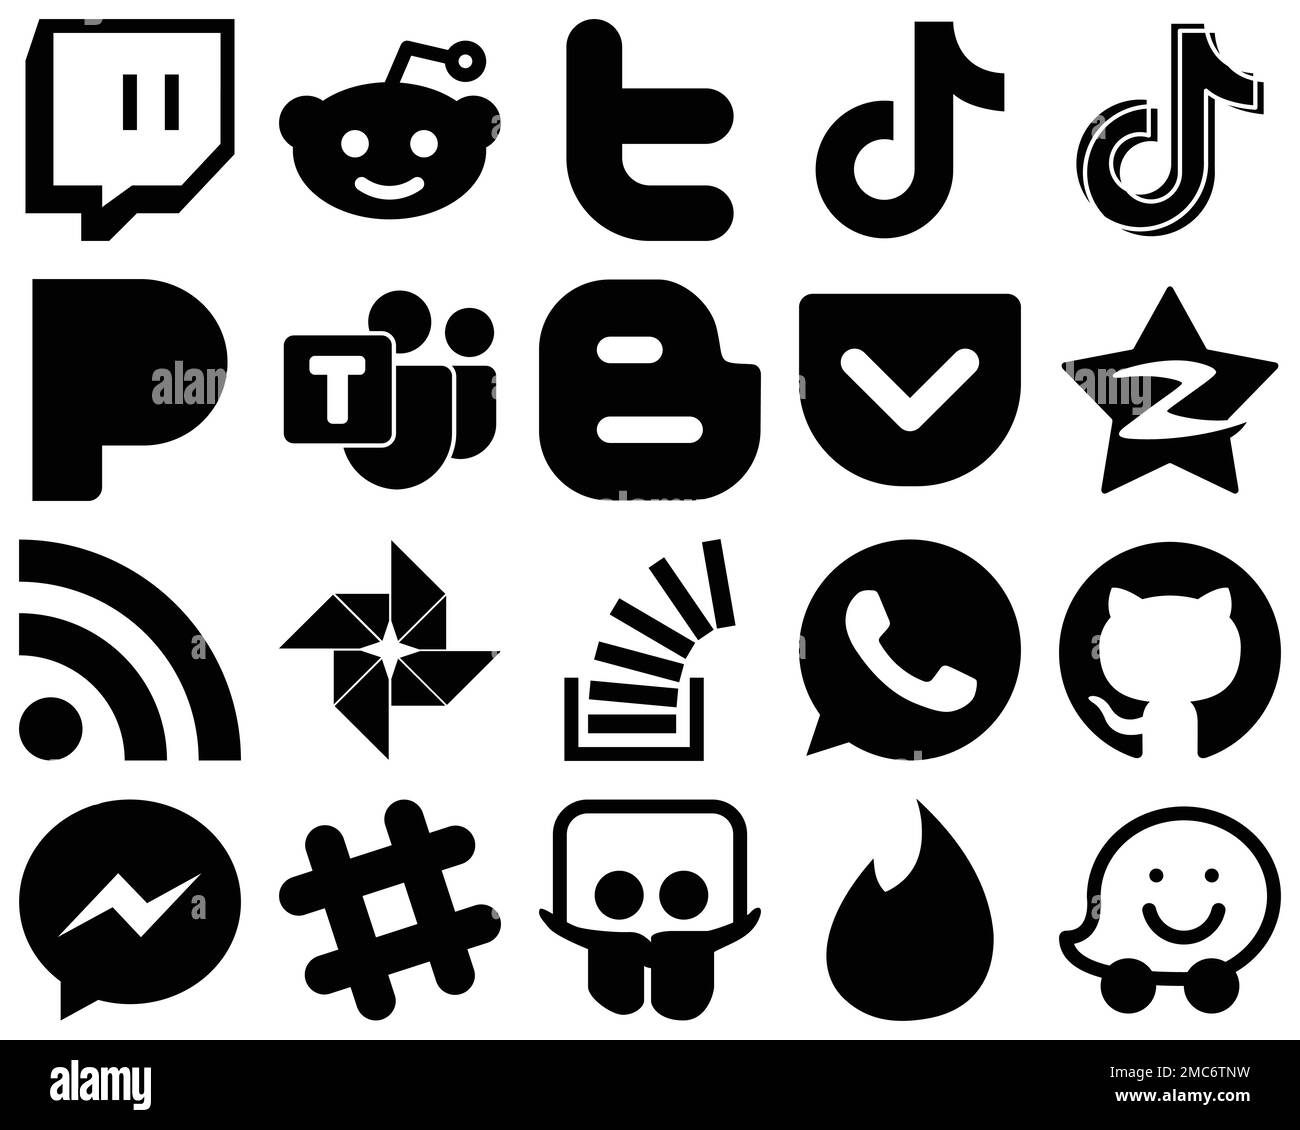 20 vielseitige schwarze einfarbige Glyphe-Symbole wie qzone. Taschen- und Blogger-Symbole. High Definition und professionell Stock Vektor